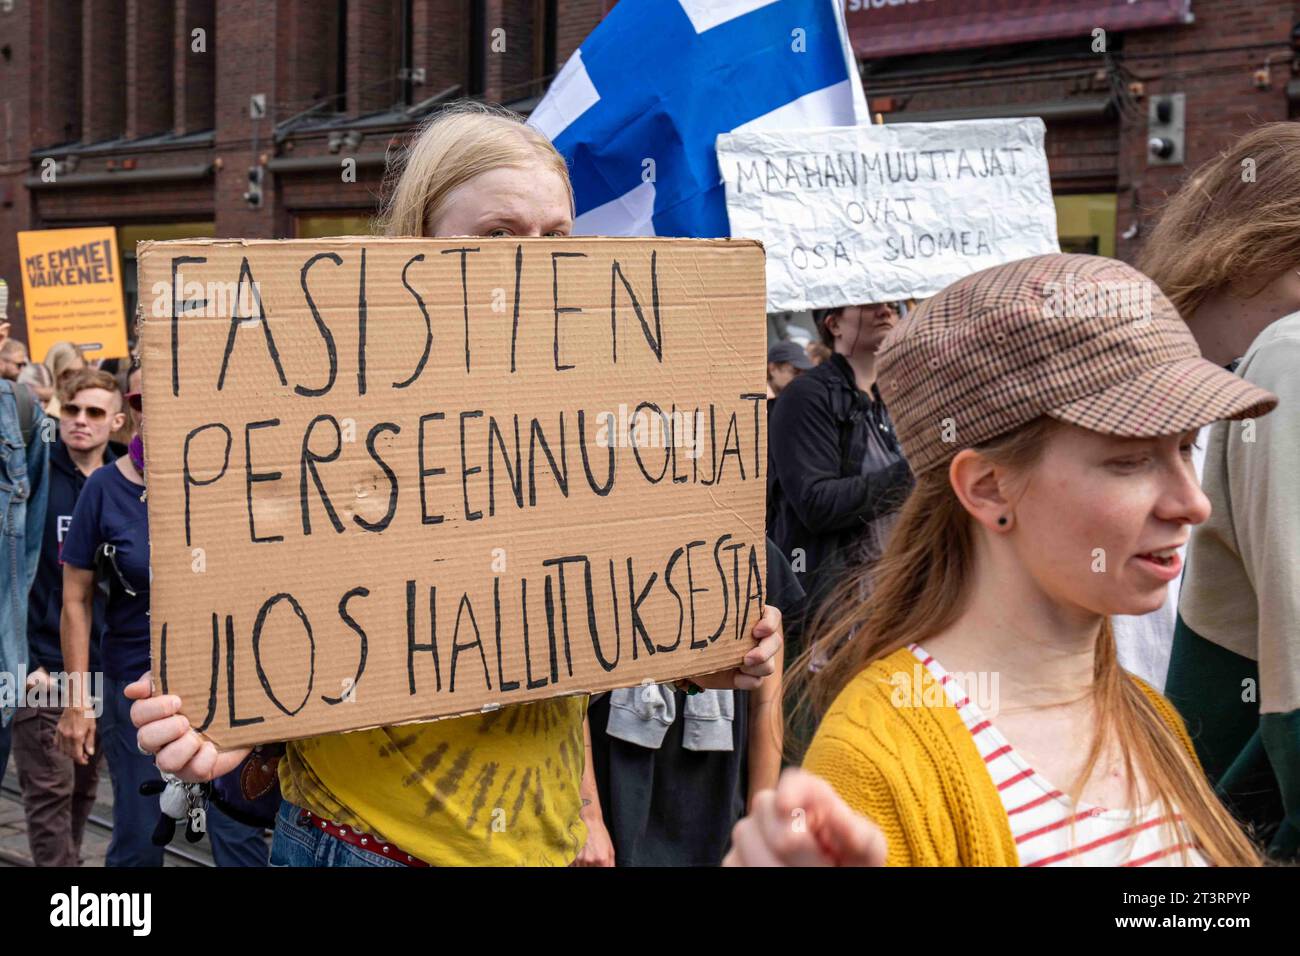 Fasistien perseennuolijat ulos hallituksesta. Der Demonstrant hält ein Pappschild auf mich, emme Vaikene! Anti-Rassismus-Demonstration in Helsinki, Finnland. Stockfoto